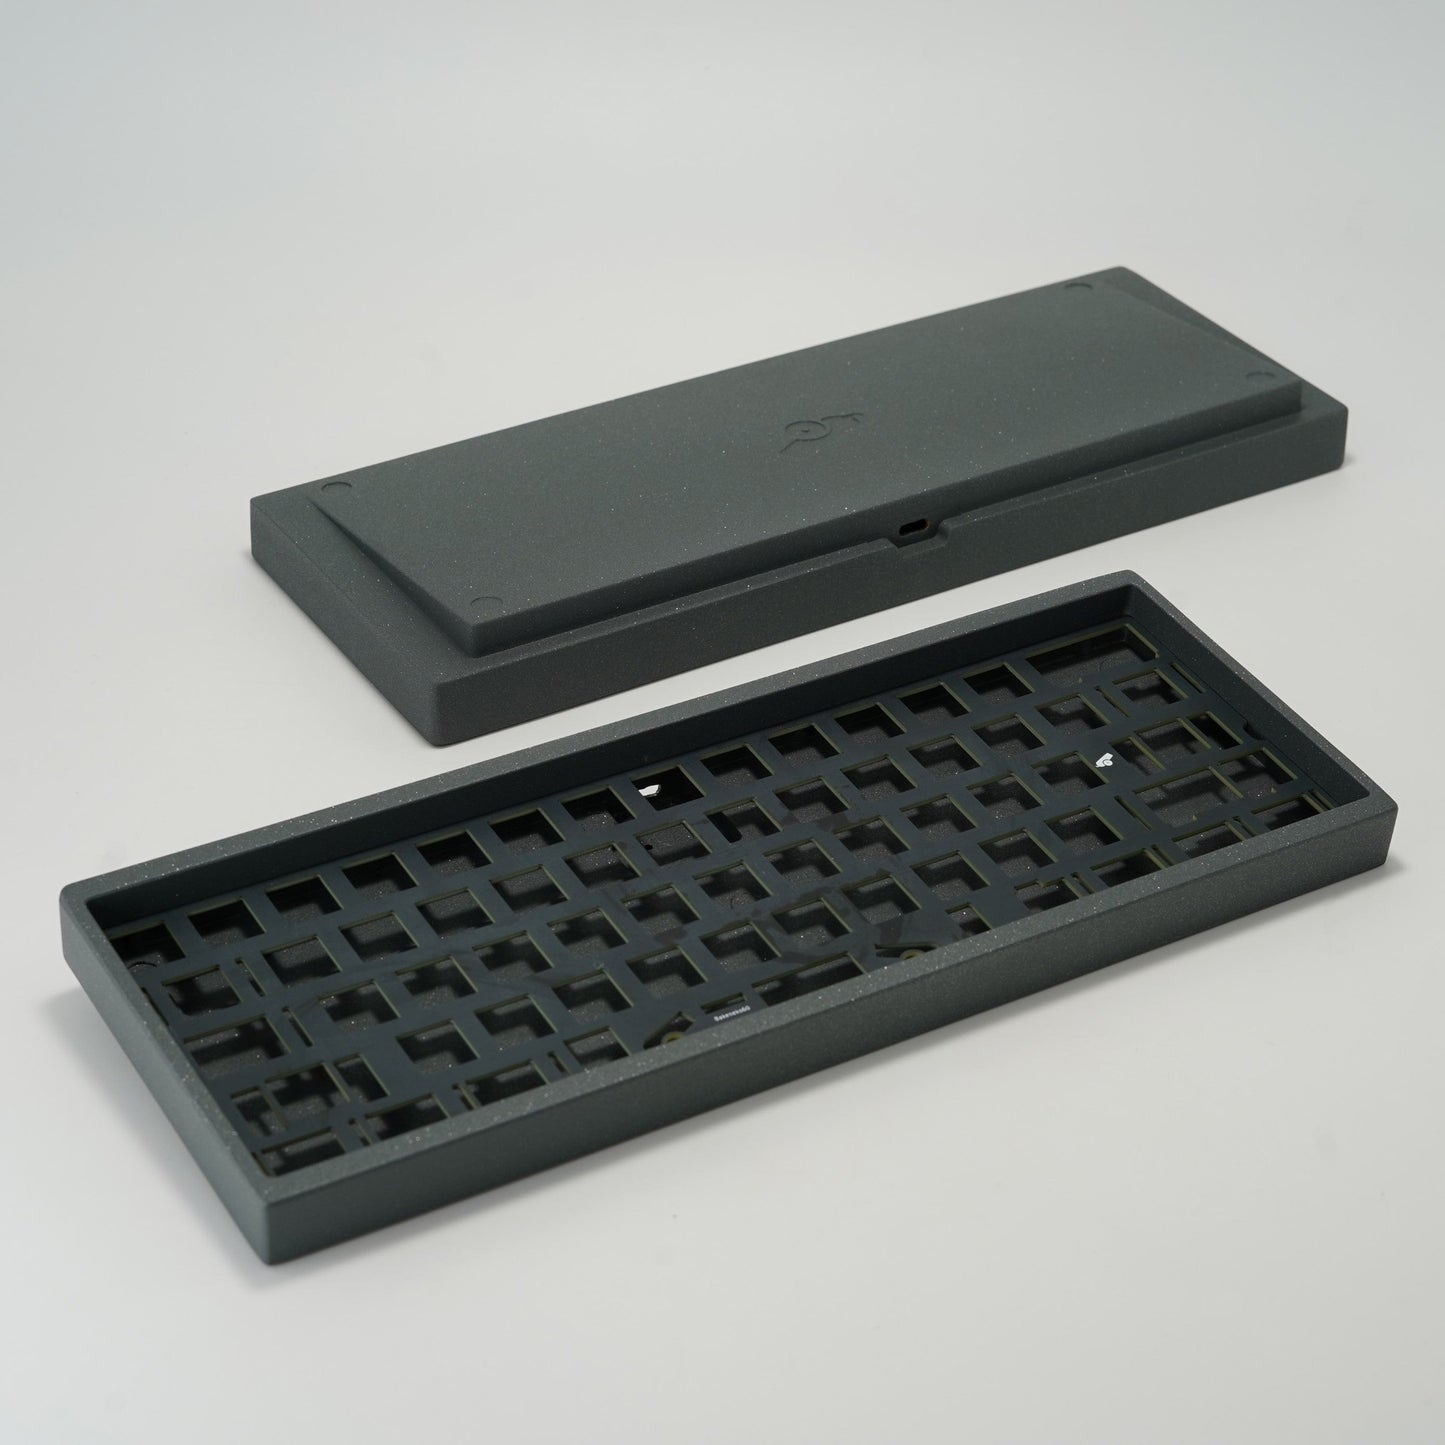 CannonKeys Copy of Bakeneko60 Keyboard kit